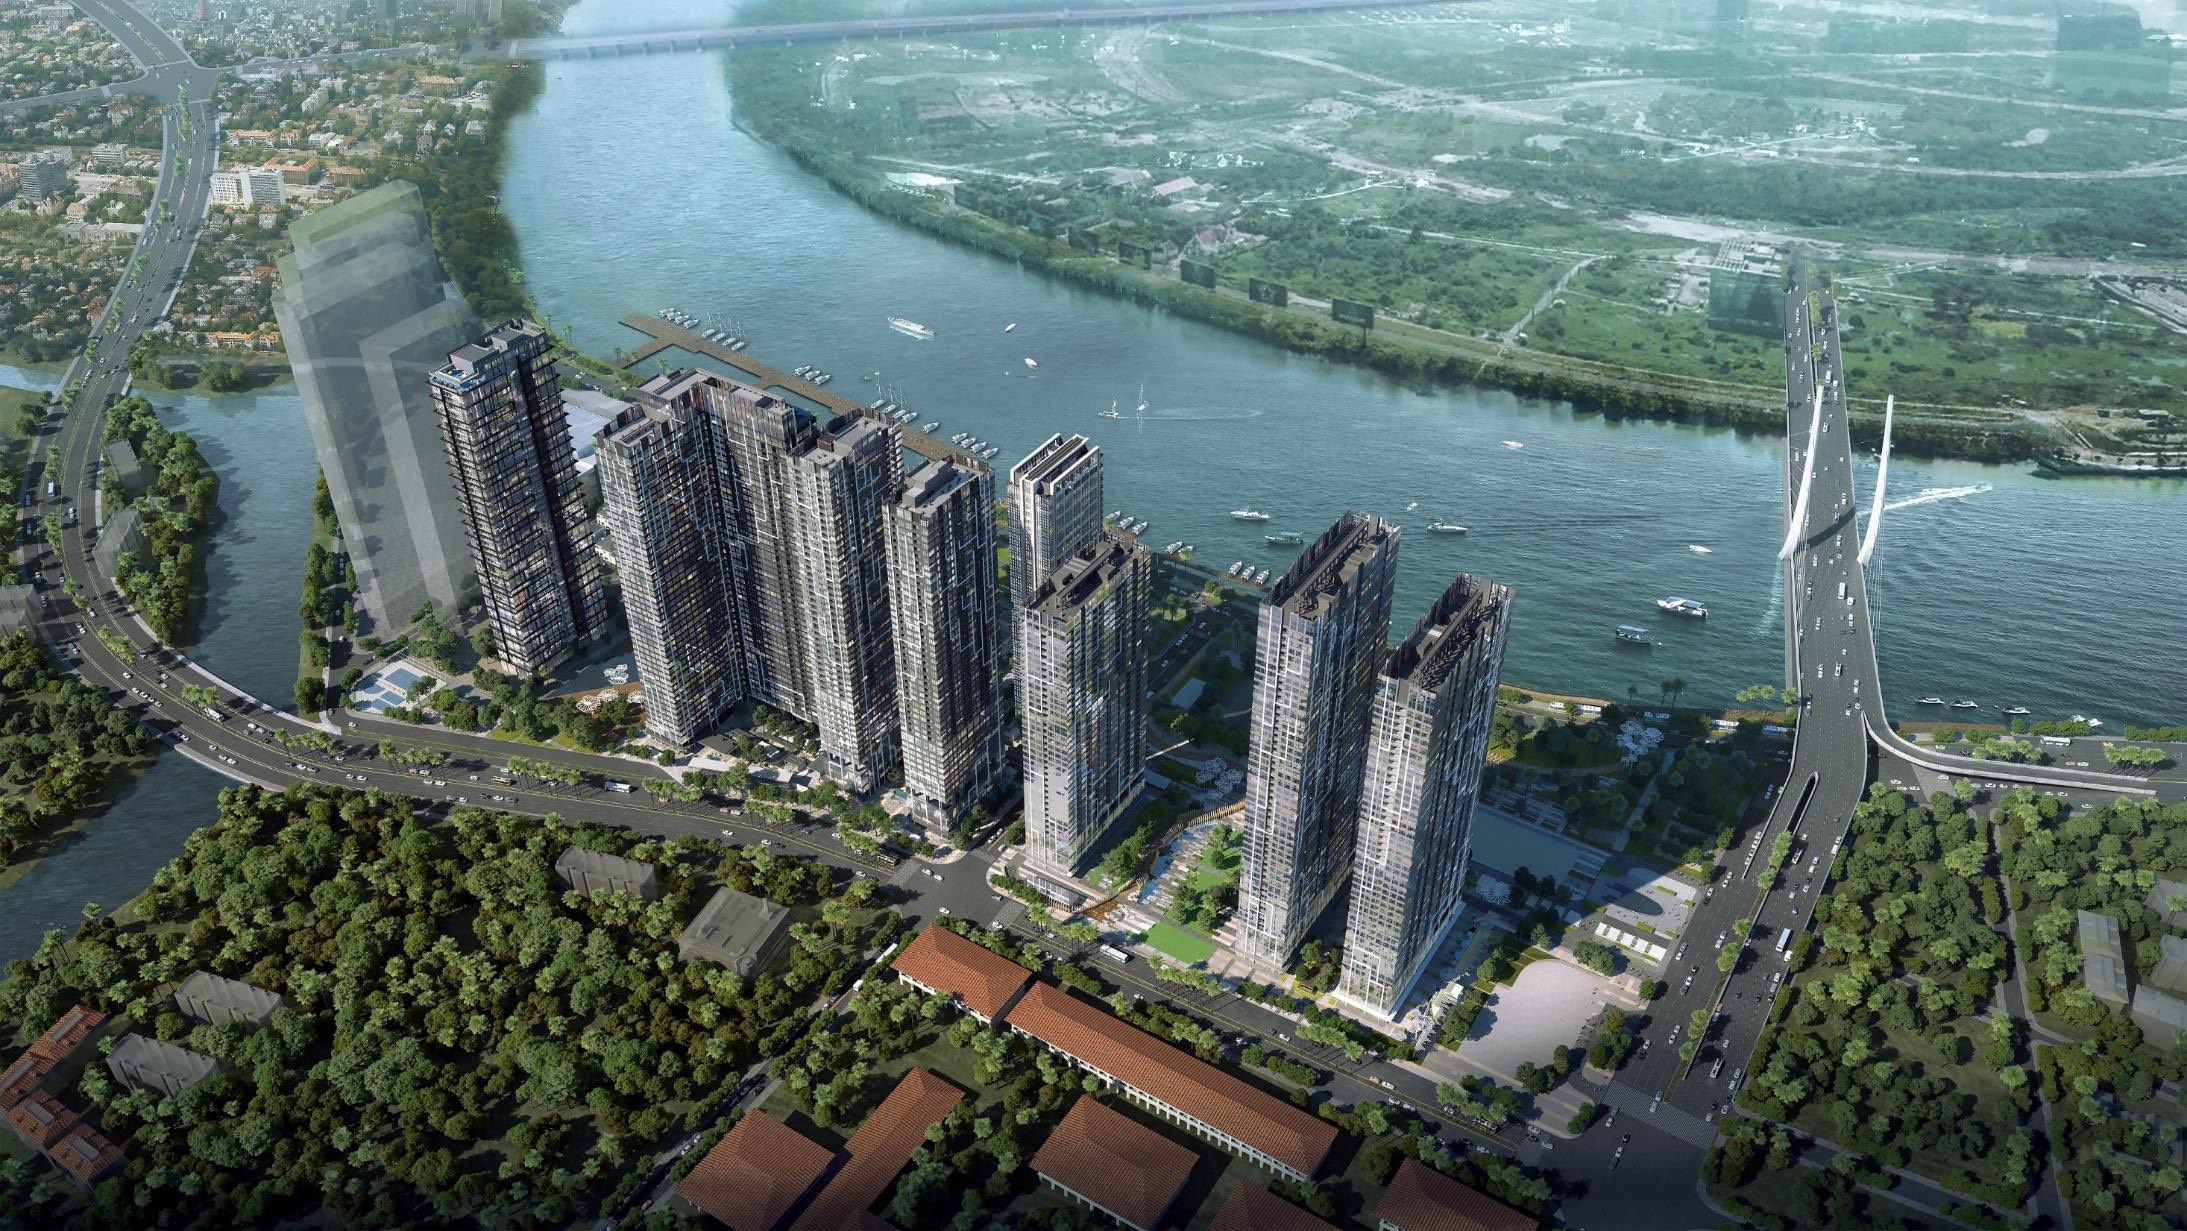 Thiết kế căn hộ Grand Marina Quận 1 - khu căn hộ chung cư cao cấp đắt đỏ nhất trung tâm Thành phố Hồ Chí Minh hiện nay